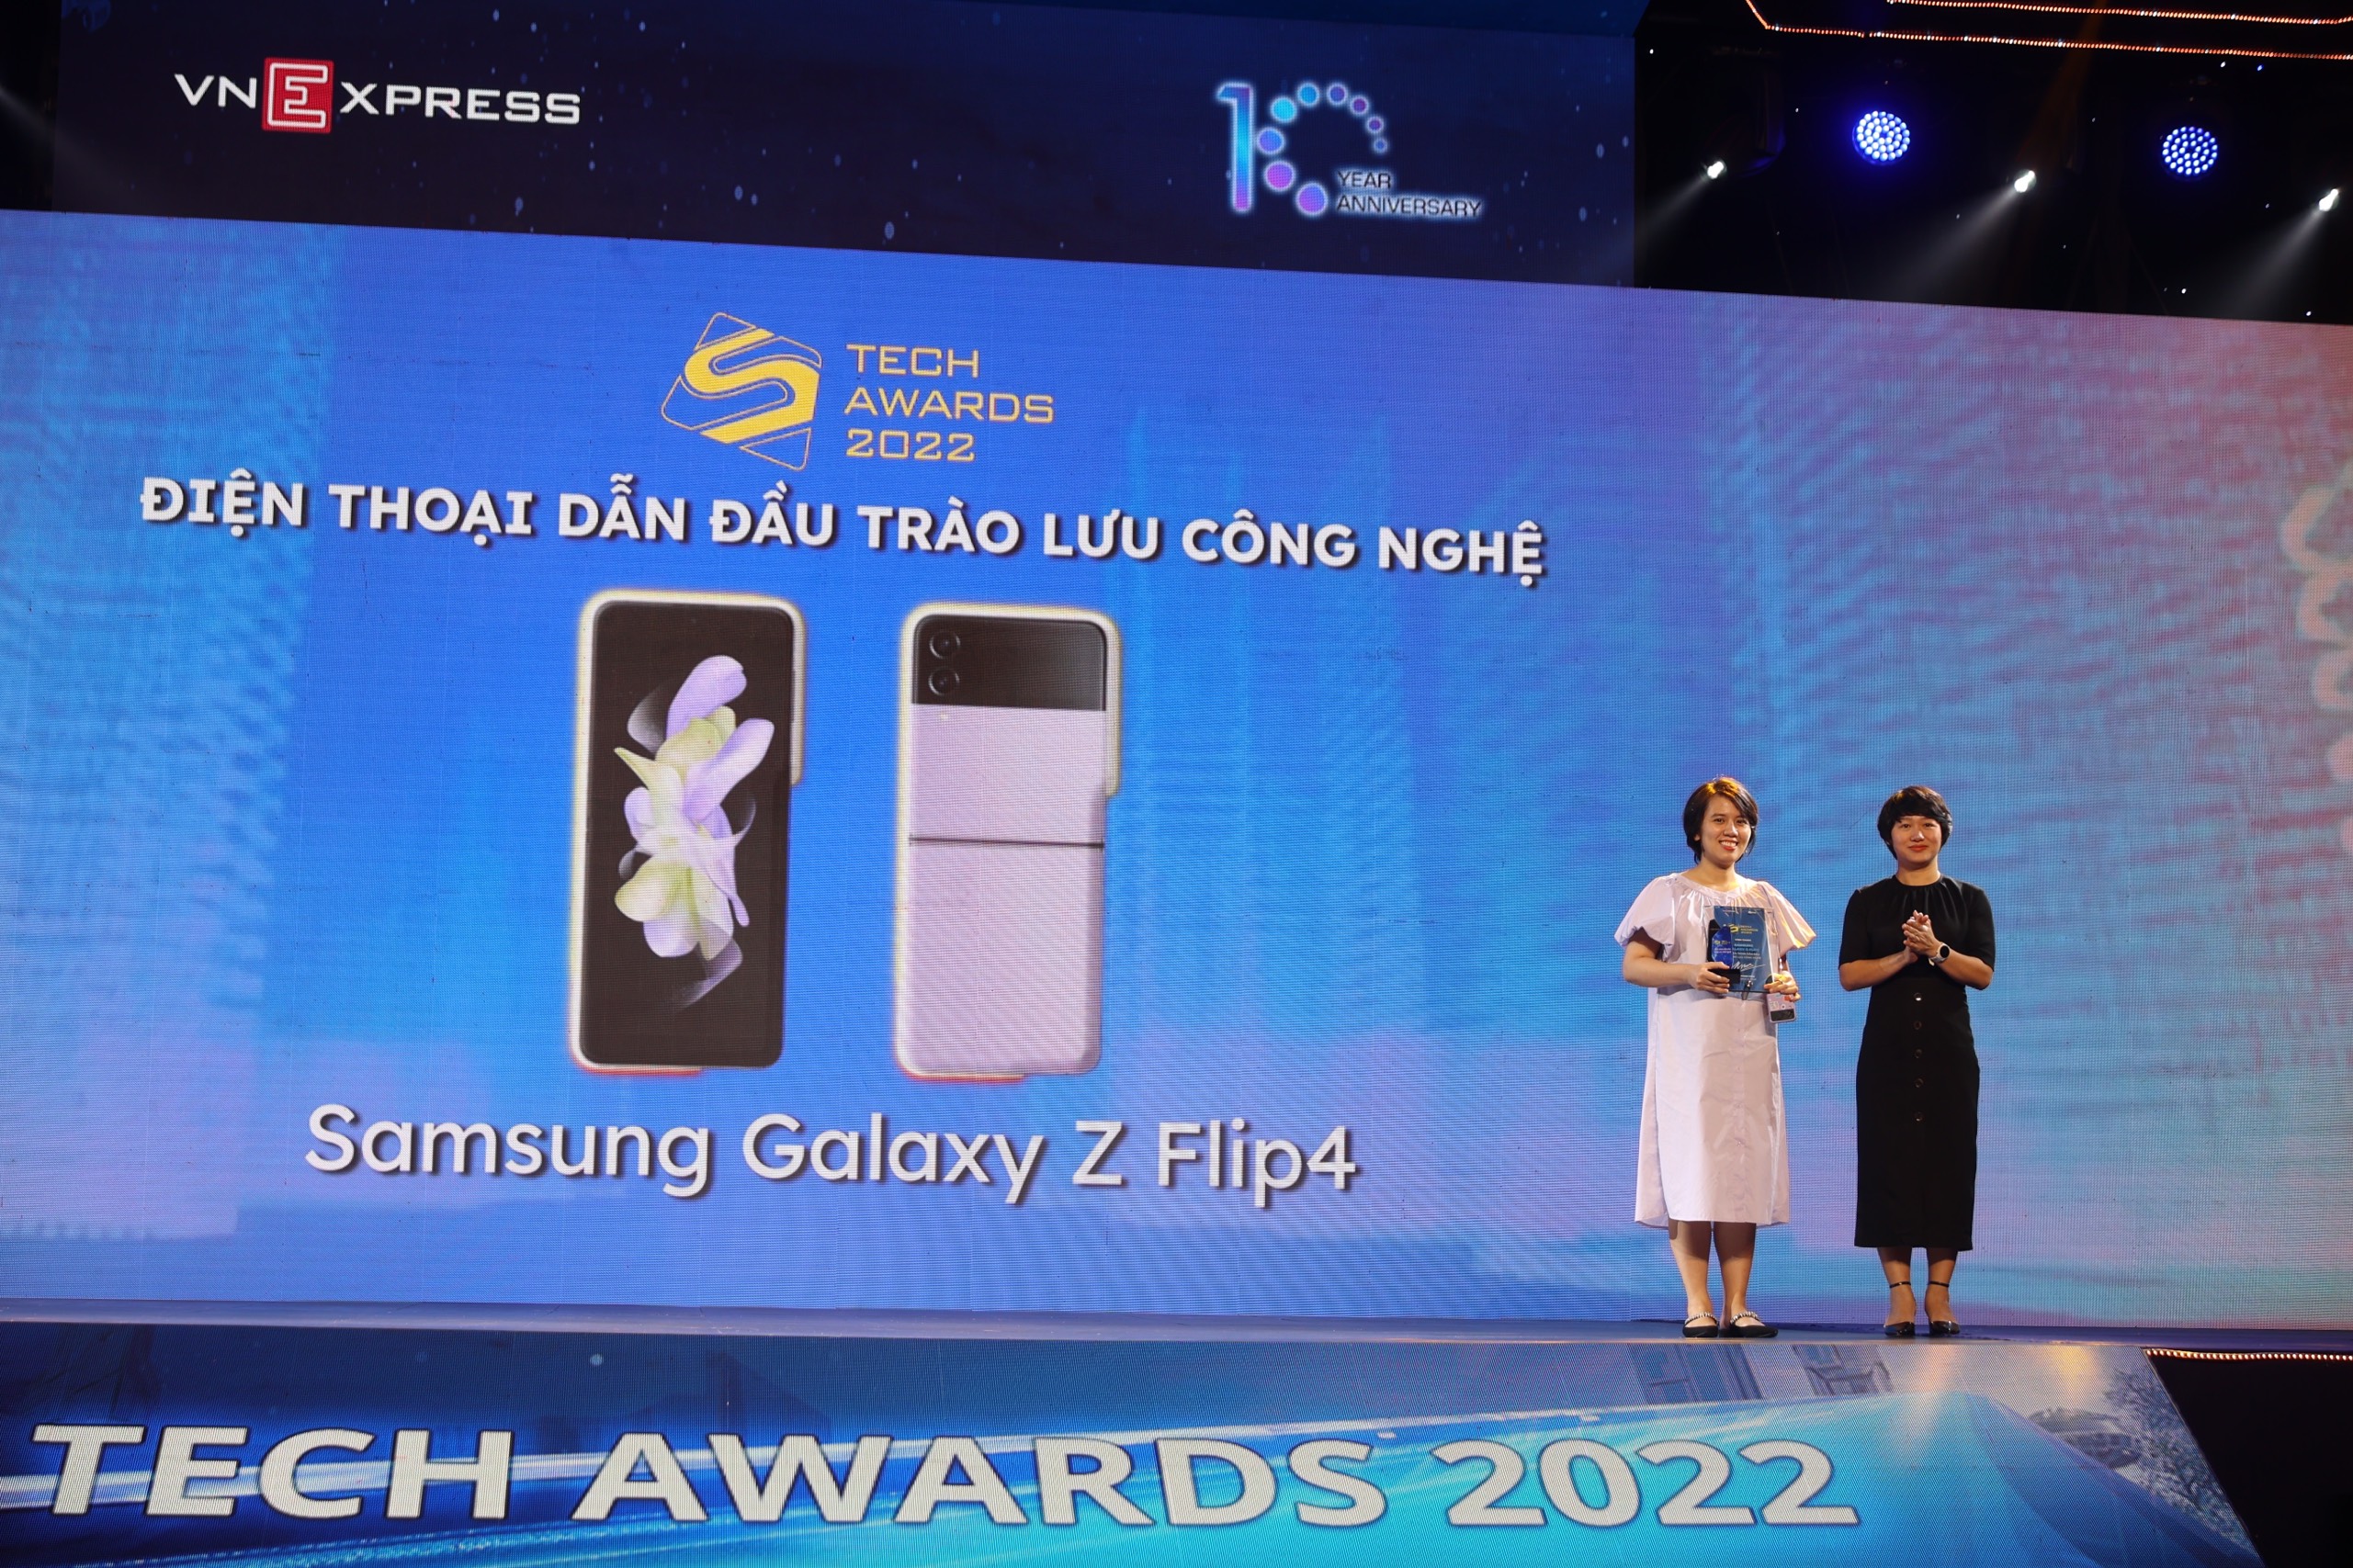 Tech Awards 2022 - Những sản phẩm công nghệ xuất sắc nhất năm 2022 đã lộ diện